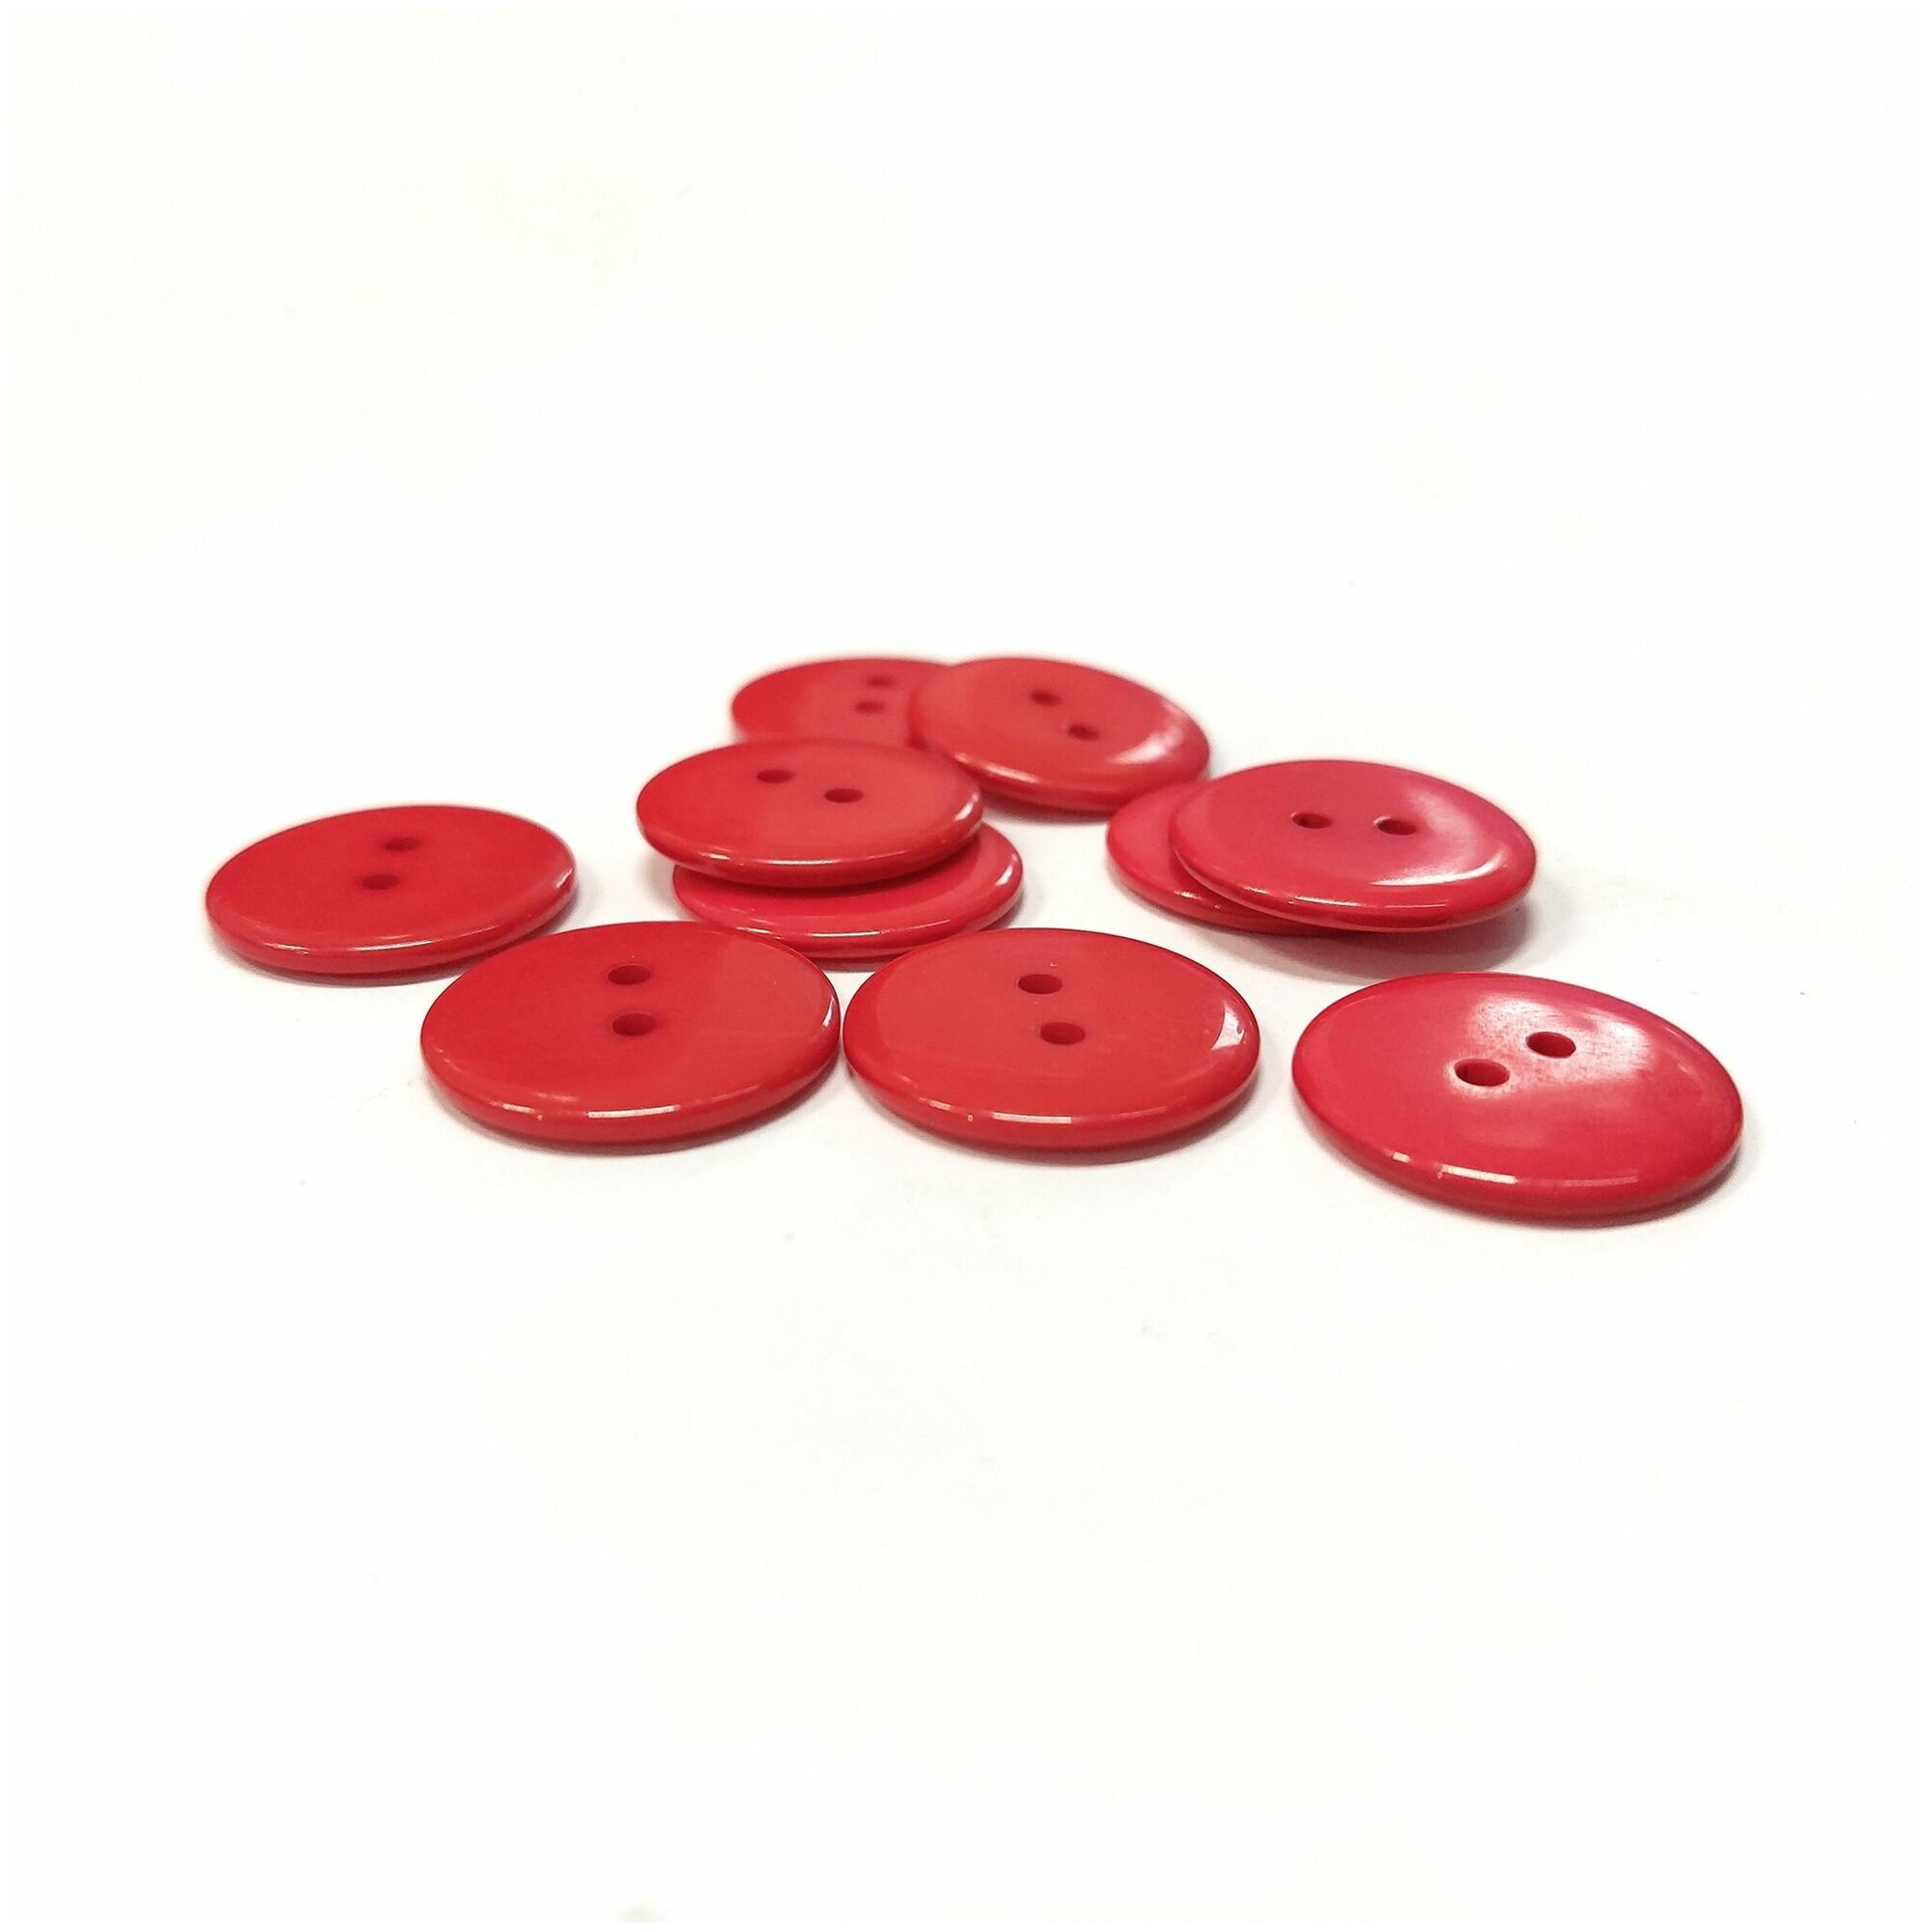 Пуговицы пластиковые красные с двумя отверстиями, 23мм - 10 штук.